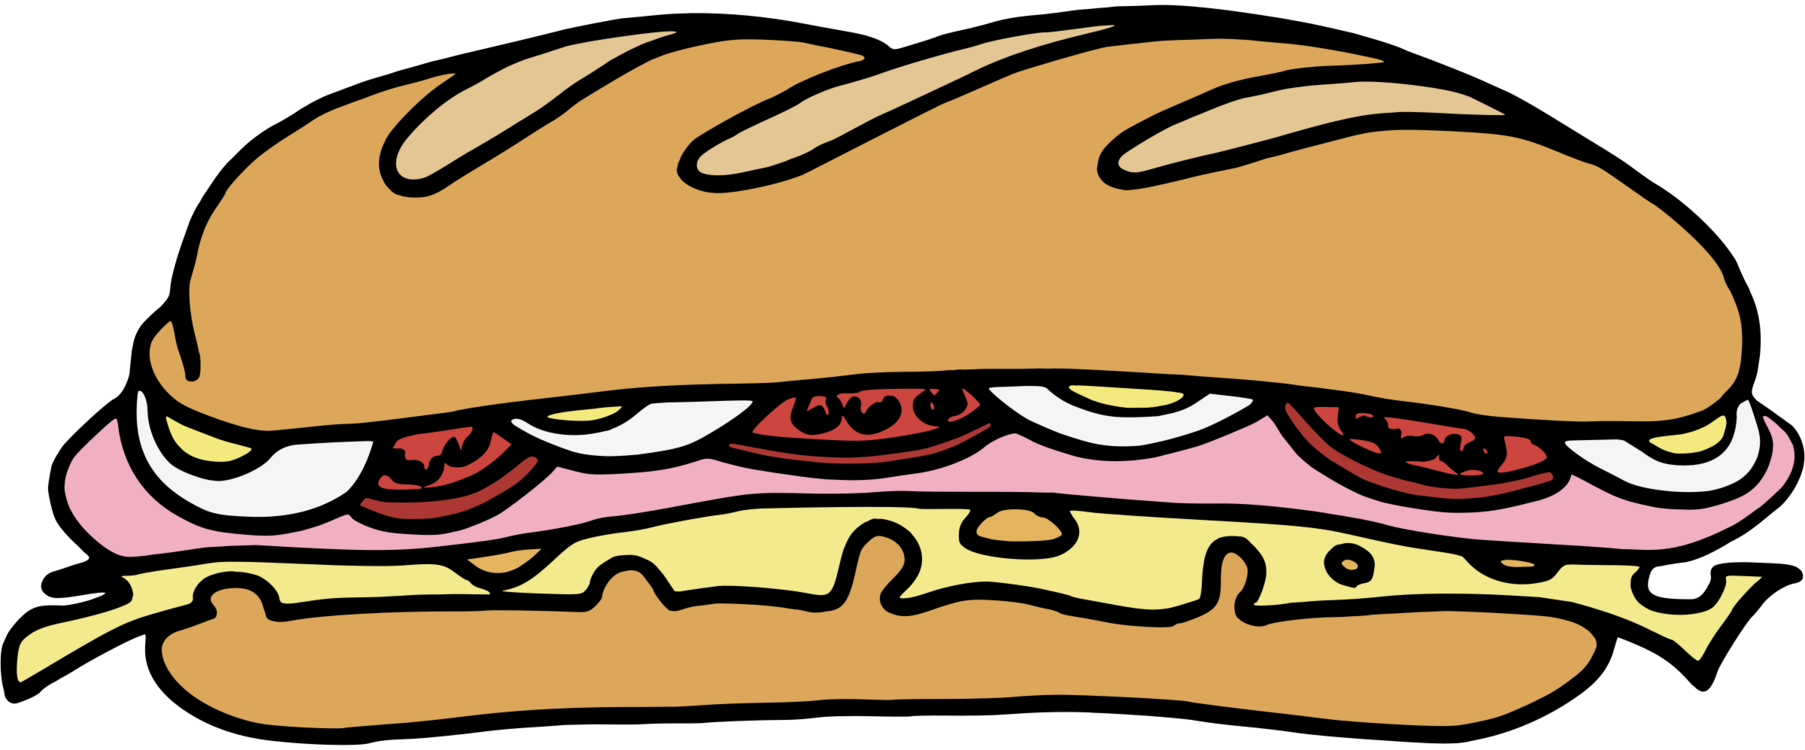 Hamburger,Food,Cheeseburger